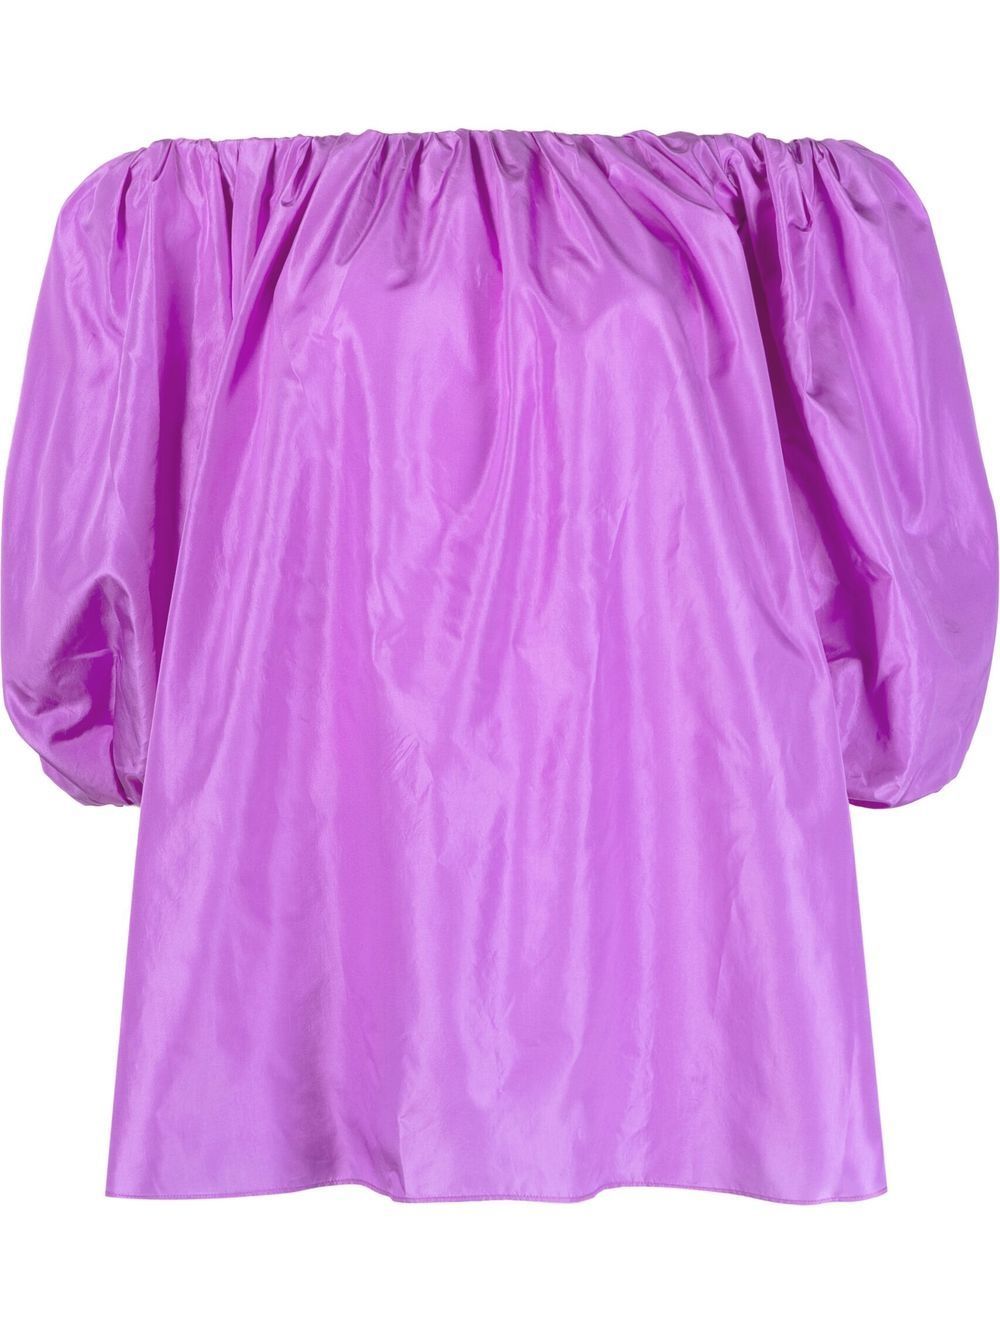 豪华紫幽兰丝绸女式上衣